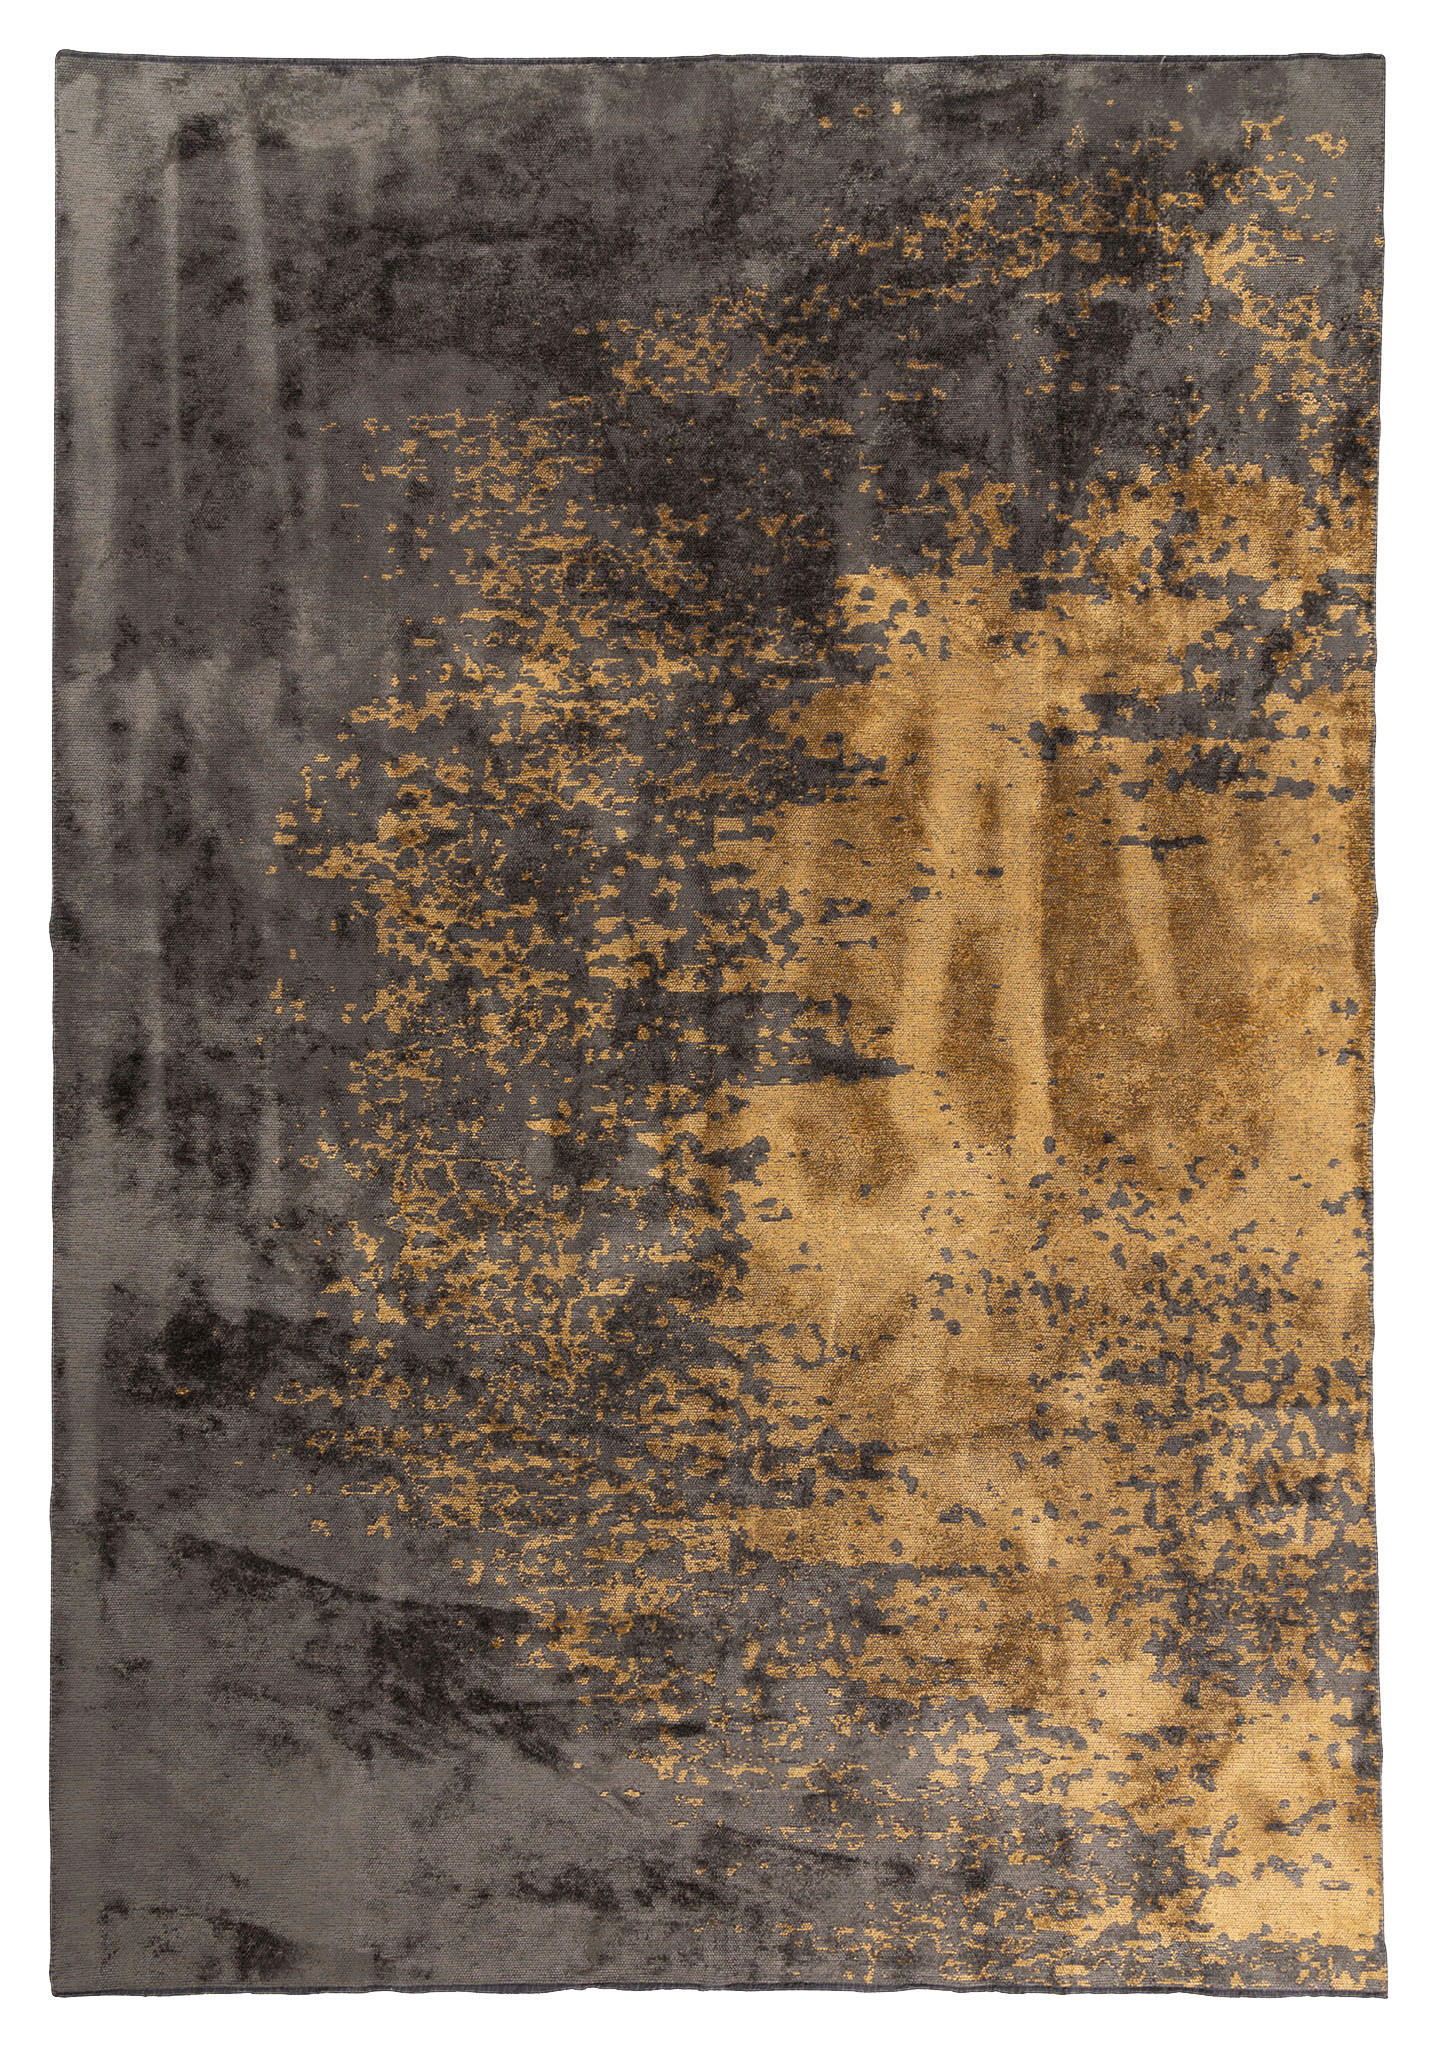 WEBTEPPICH  240/340 cm  Anthrazit, Goldfarben   - Anthrazit/Goldfarben, Design, Textil (240/340cm) - Novel